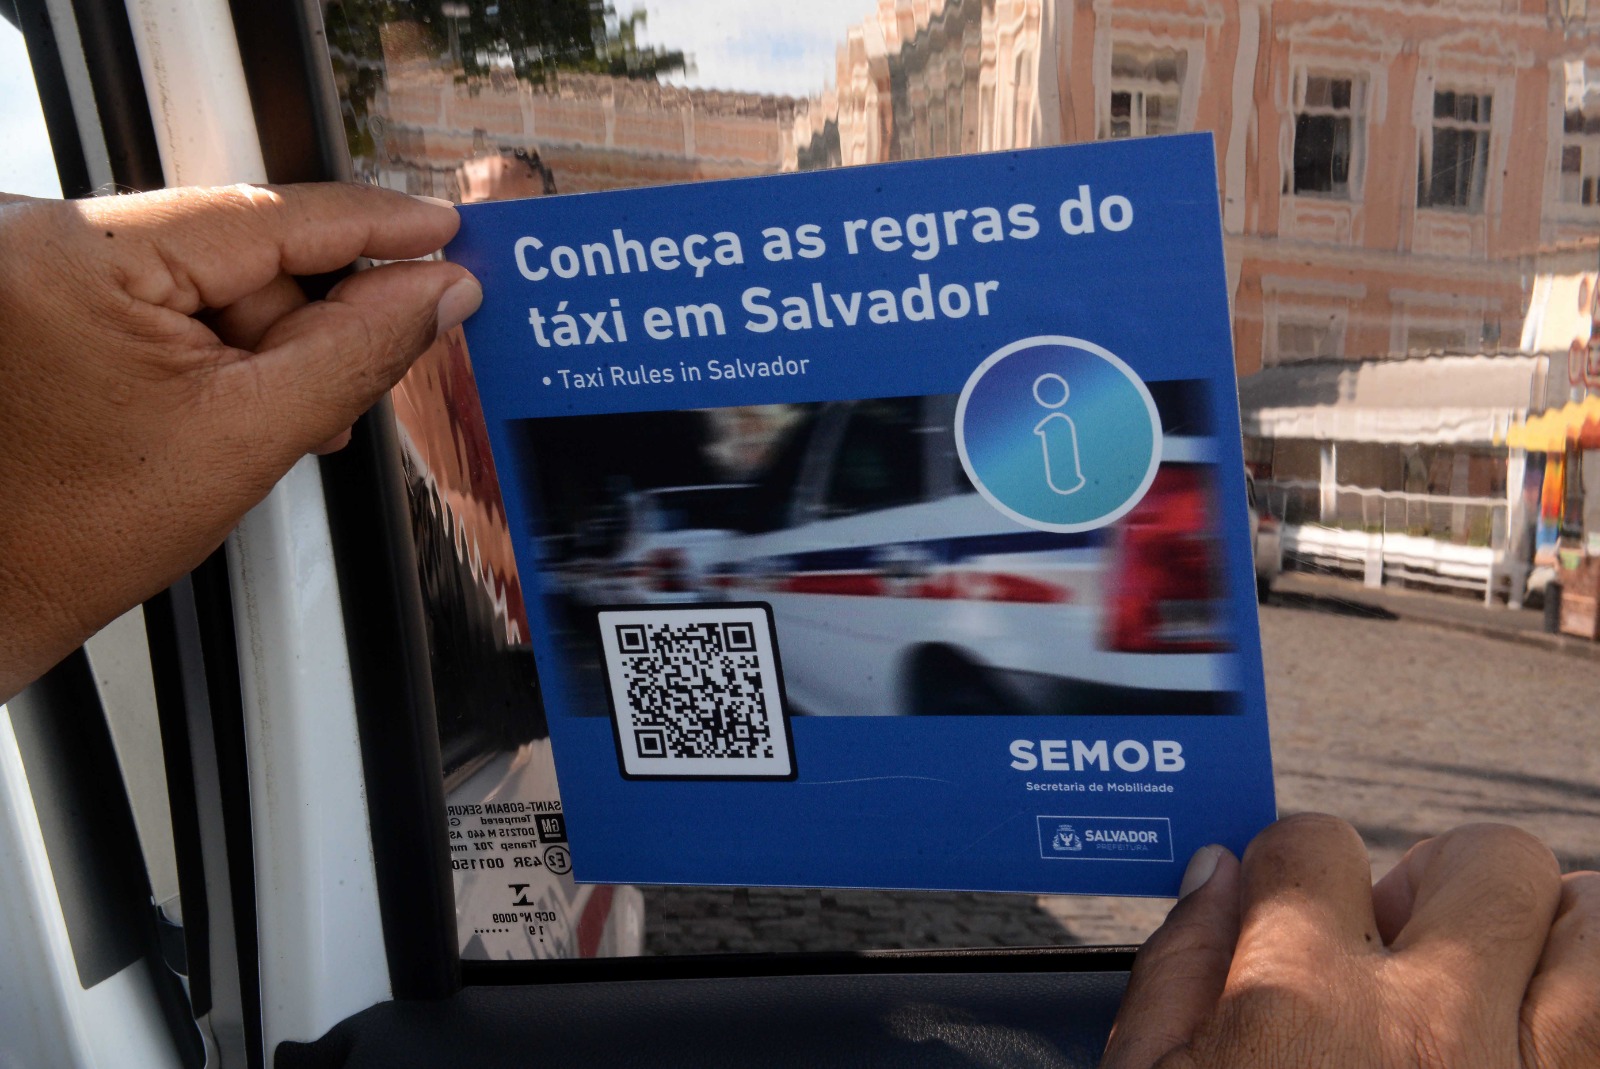 Agentes da Semob distribuem adesivos com informações sobre táxis em Salvador